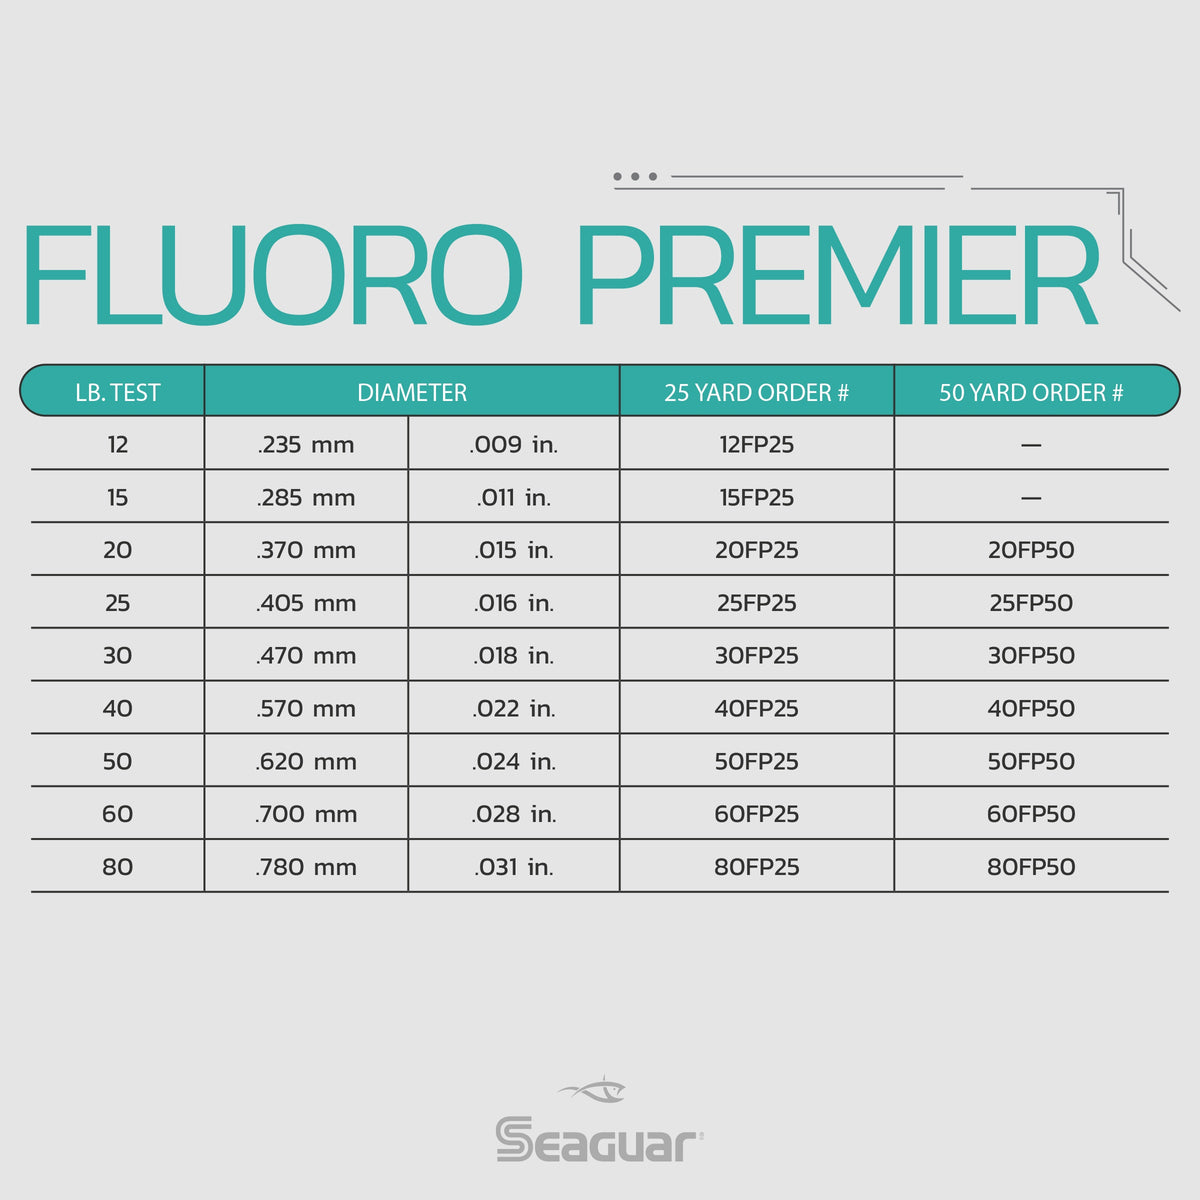 Fluoro Premier